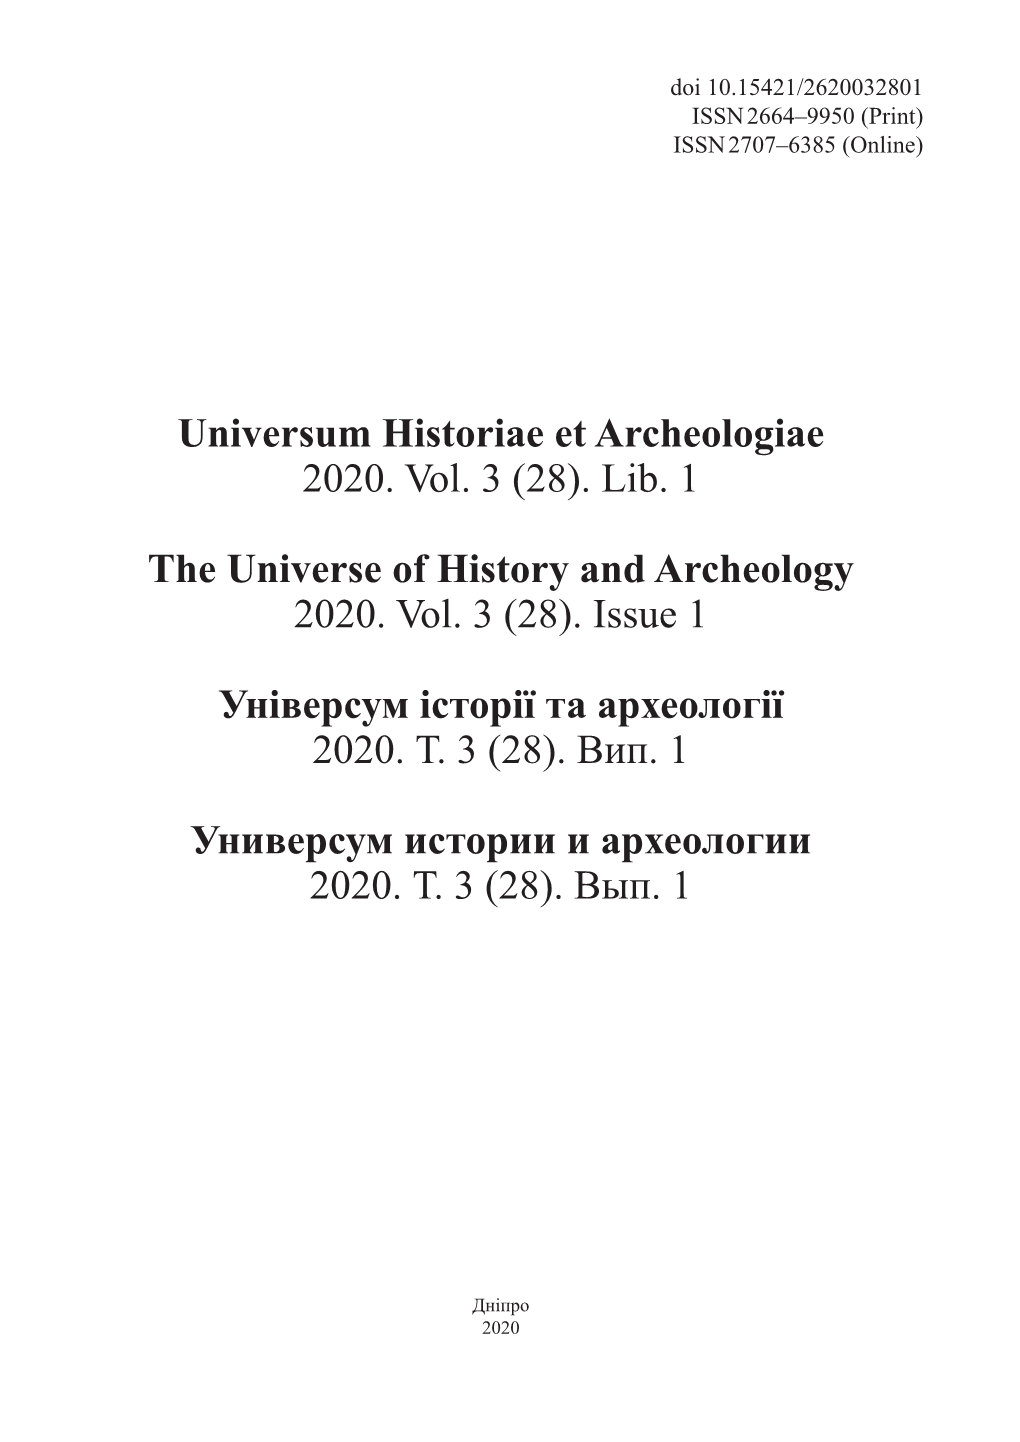 Universum Historiae Et Archeologiae 2020. Vol. 3 (28). Lib. 1 The